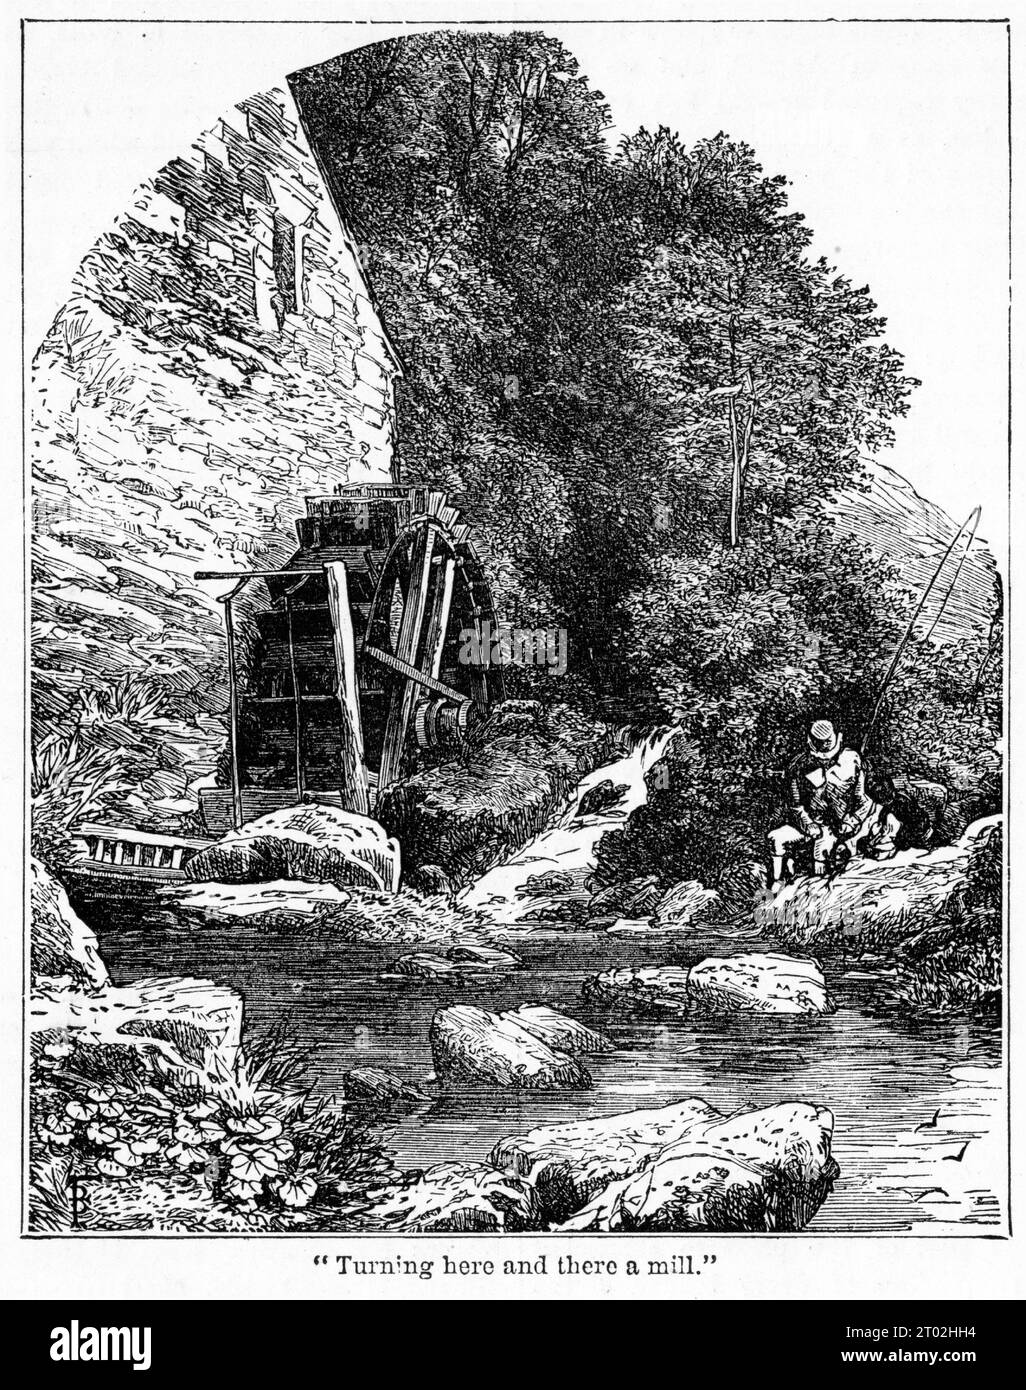 Gravure d'une scène idyllique d'un moulin à eau à la campagne, vers 1880 Banque D'Images